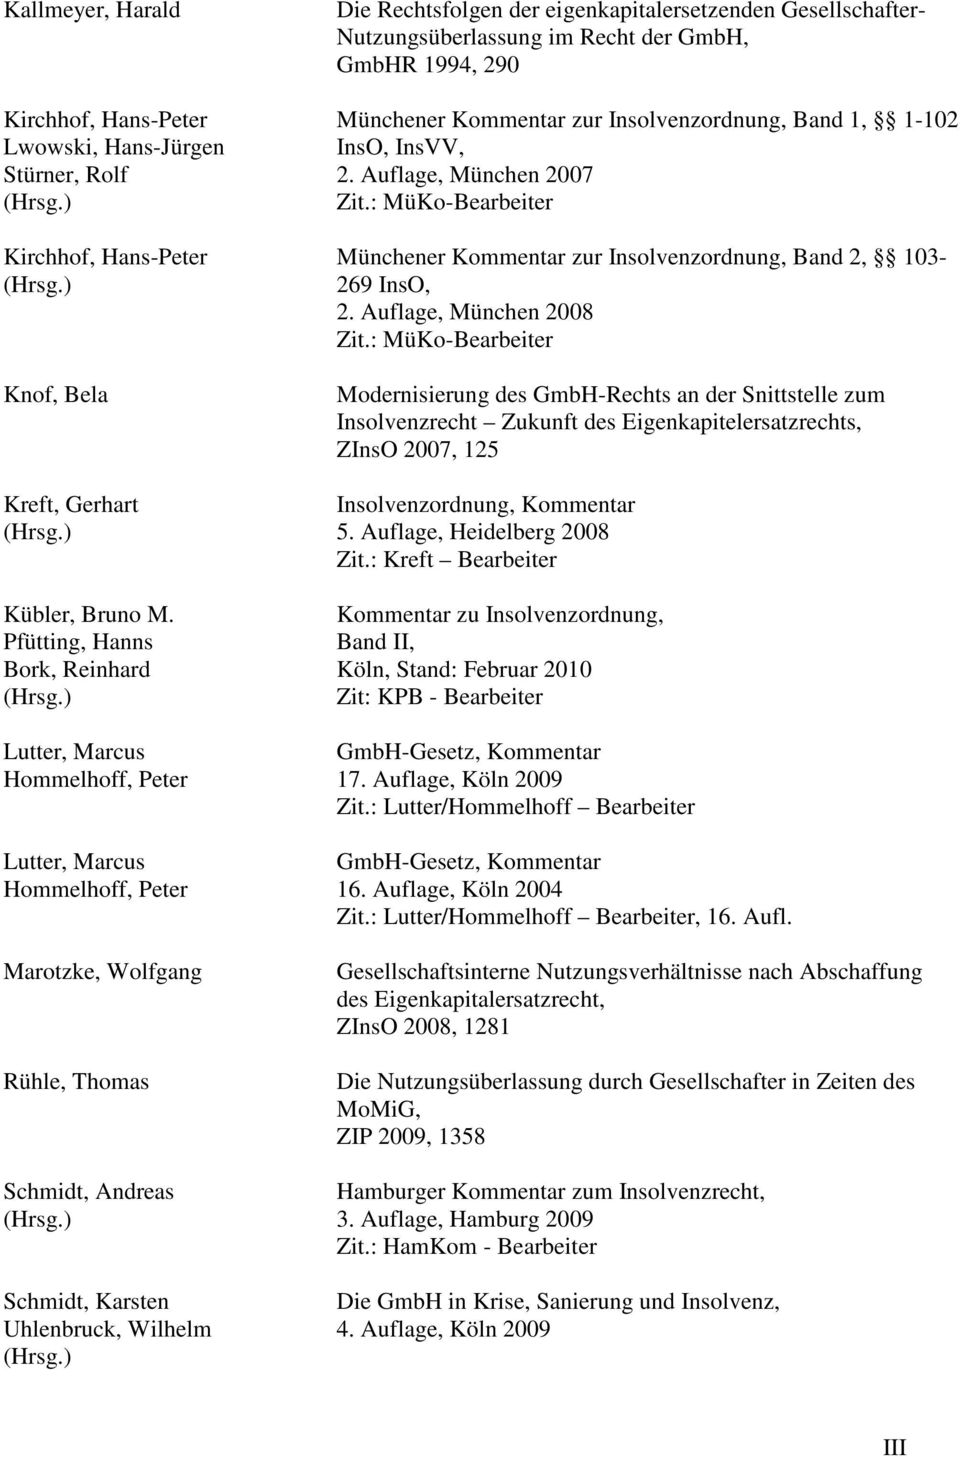 ) Die Rechtsfolgen der eigenkapitalersetzenden Gesellschafter- Nutzungsüberlassung im Recht der GmbH, GmbHR 1994, 290 Münchener Kommentar zur Insolvenzordnung, Band 1, 1-102 InsO, InsVV, 2.